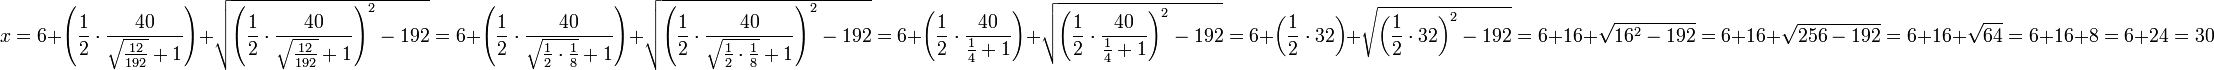 x=6+\left(\frac{1}{2}\sdot\frac{40}{\sqrt{\frac{12}{192}}+1}\right)+\sqrt{\left(\frac{1}{2}\sdot\frac{40}{\sqrt{\frac{12}{192}}+1}\right)^2-192}=6+\left(\frac{1}{2}\sdot\frac{40}{\sqrt{\frac{1}{2}\sdot\frac{1}{8}}+1}\right)+\sqrt{\left(\frac{1}{2}\sdot\frac{40}{\sqrt{\frac{1}{2}\sdot\frac{1}{8}}+1}\right)^2-192}=6+\left(\frac{1}{2}\sdot\frac{40}{\frac{1}{4}+1}\right)+\sqrt{\left(\frac{1}{2}\sdot\frac{40}{\frac{1}{4}+1}\right)^2-192}=6+\left(\frac{1}{2}\sdot32\right)+\sqrt{\left(\frac{1}{2}\sdot32\right)^2-192}=6+16+\sqrt{16^2-192}=6+16+\sqrt{256-192}=6+16+\sqrt{64}=6+16+8=6+24=30